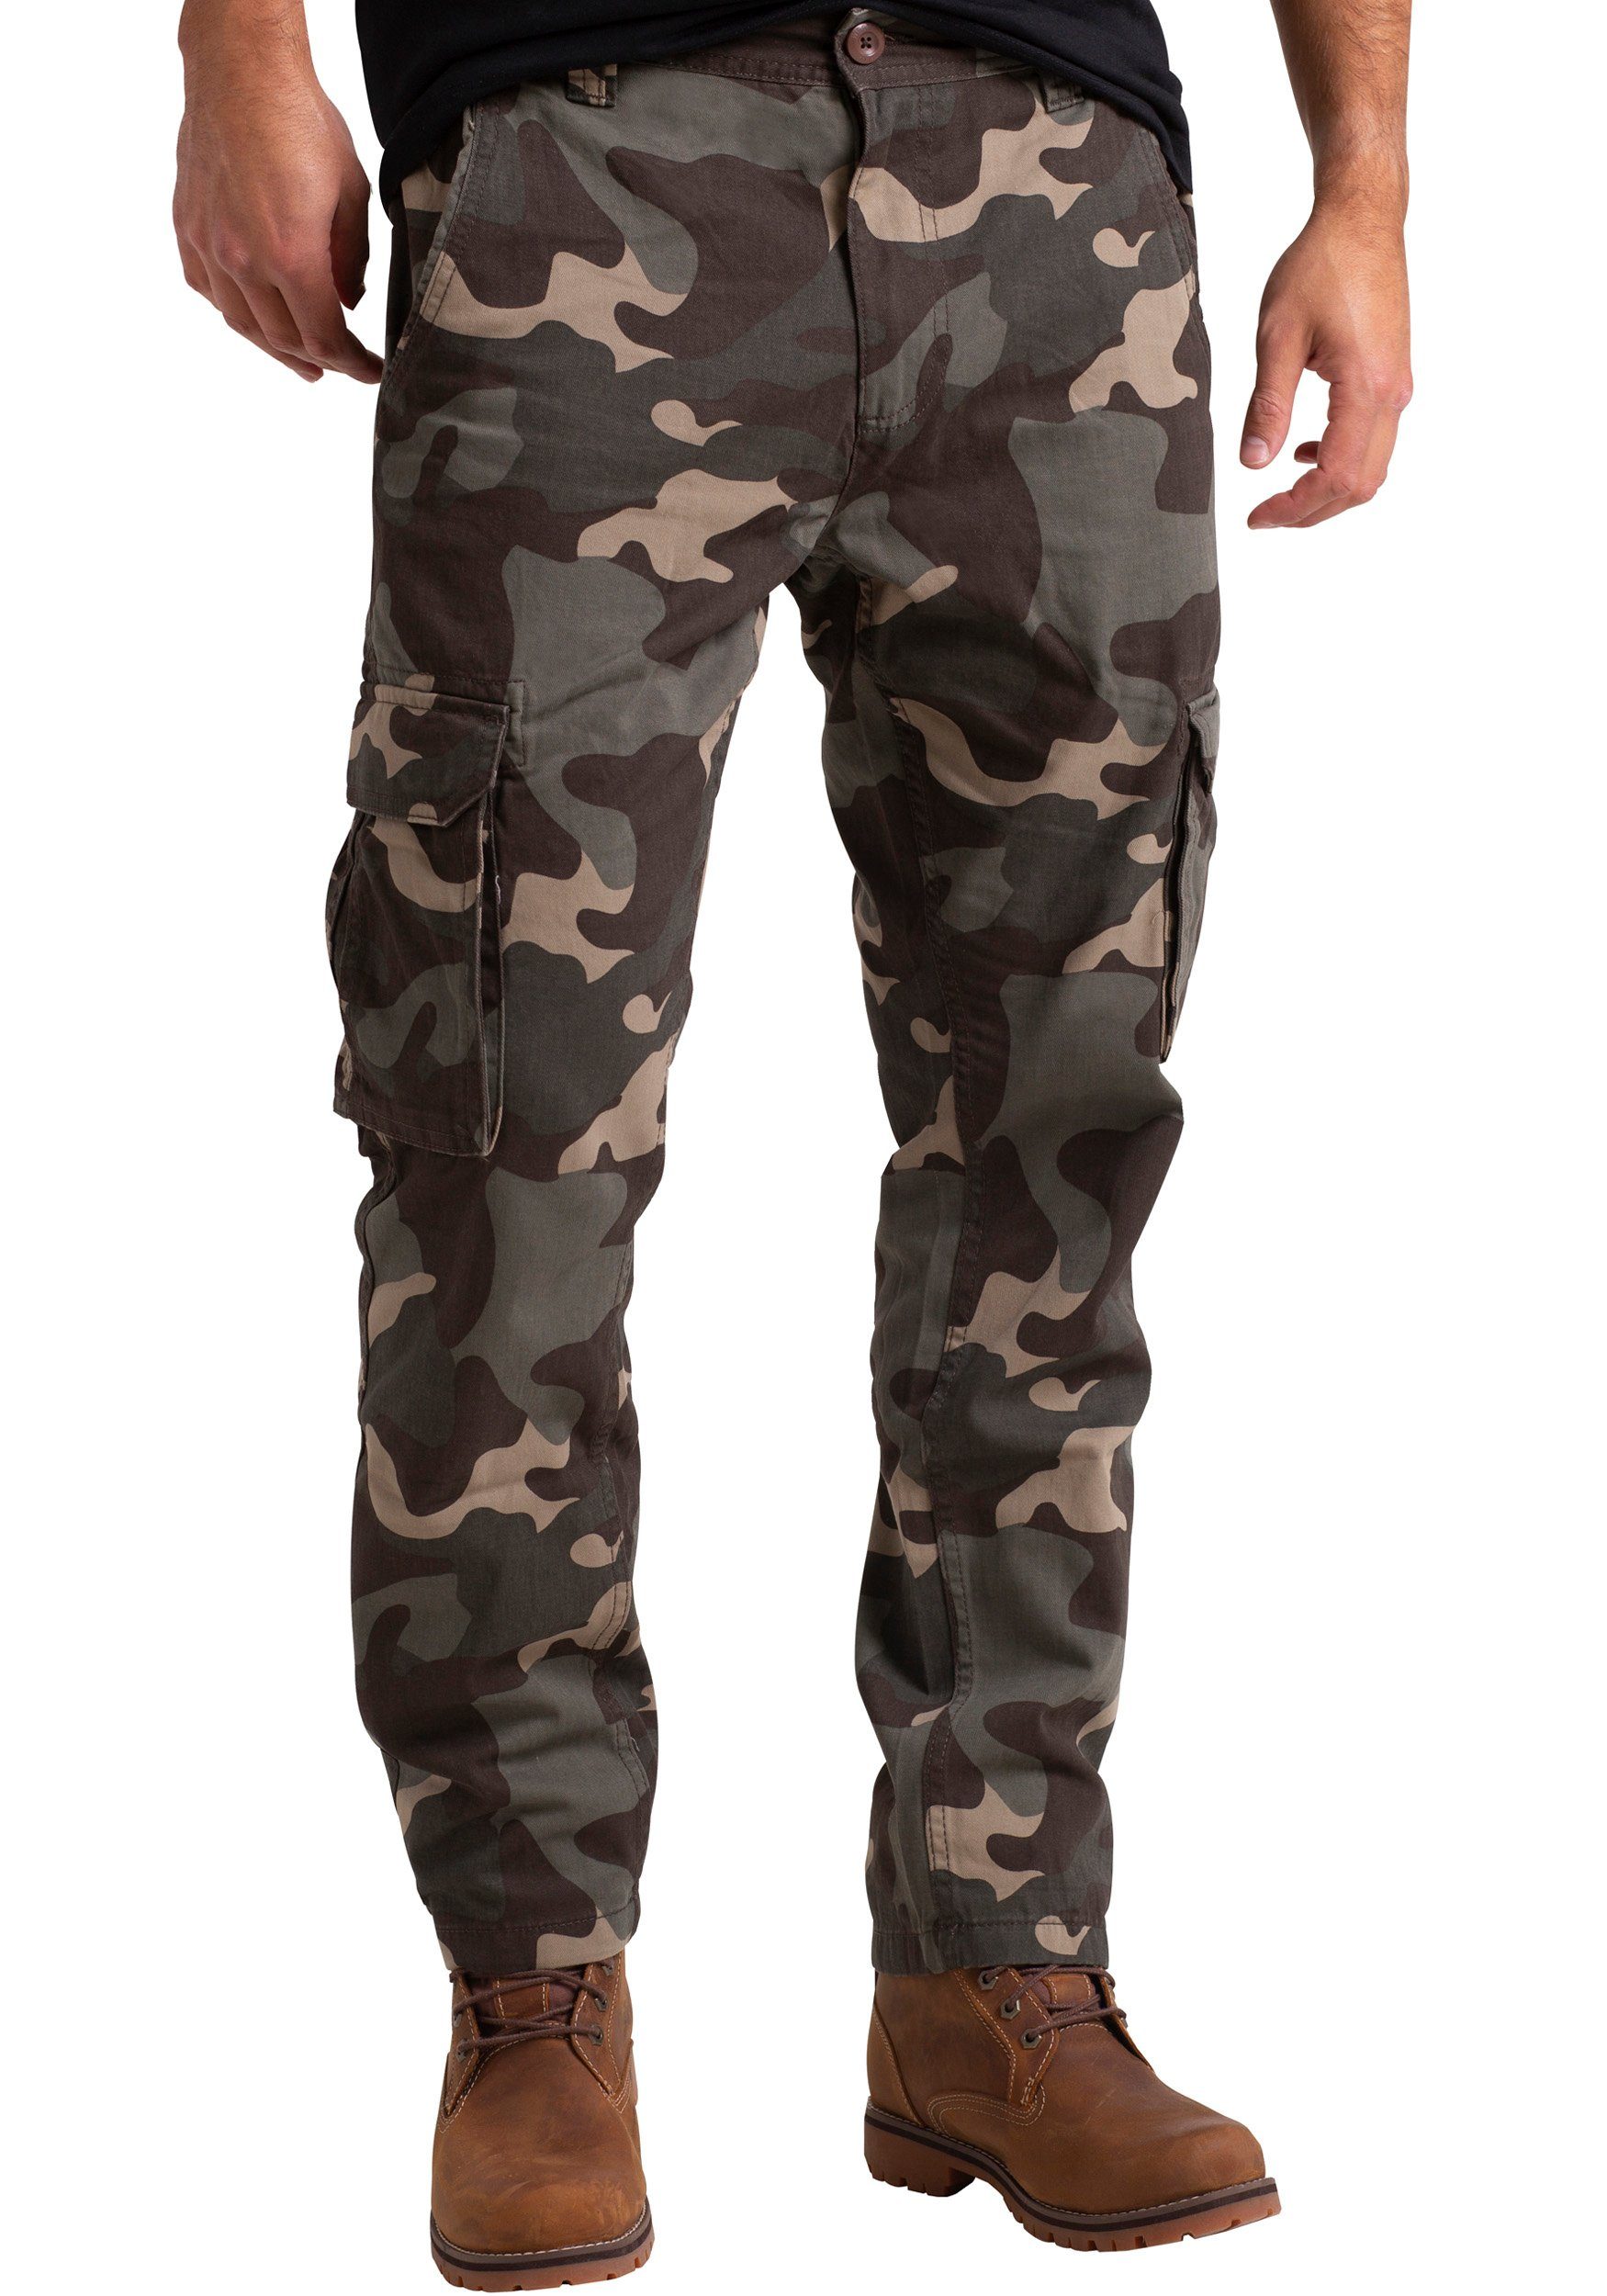 BlauerHafen Cargohose Mens Army Cargo Bein Hose Arbeitskleidung Urwald Camouflage gerades Baumwolle Camo